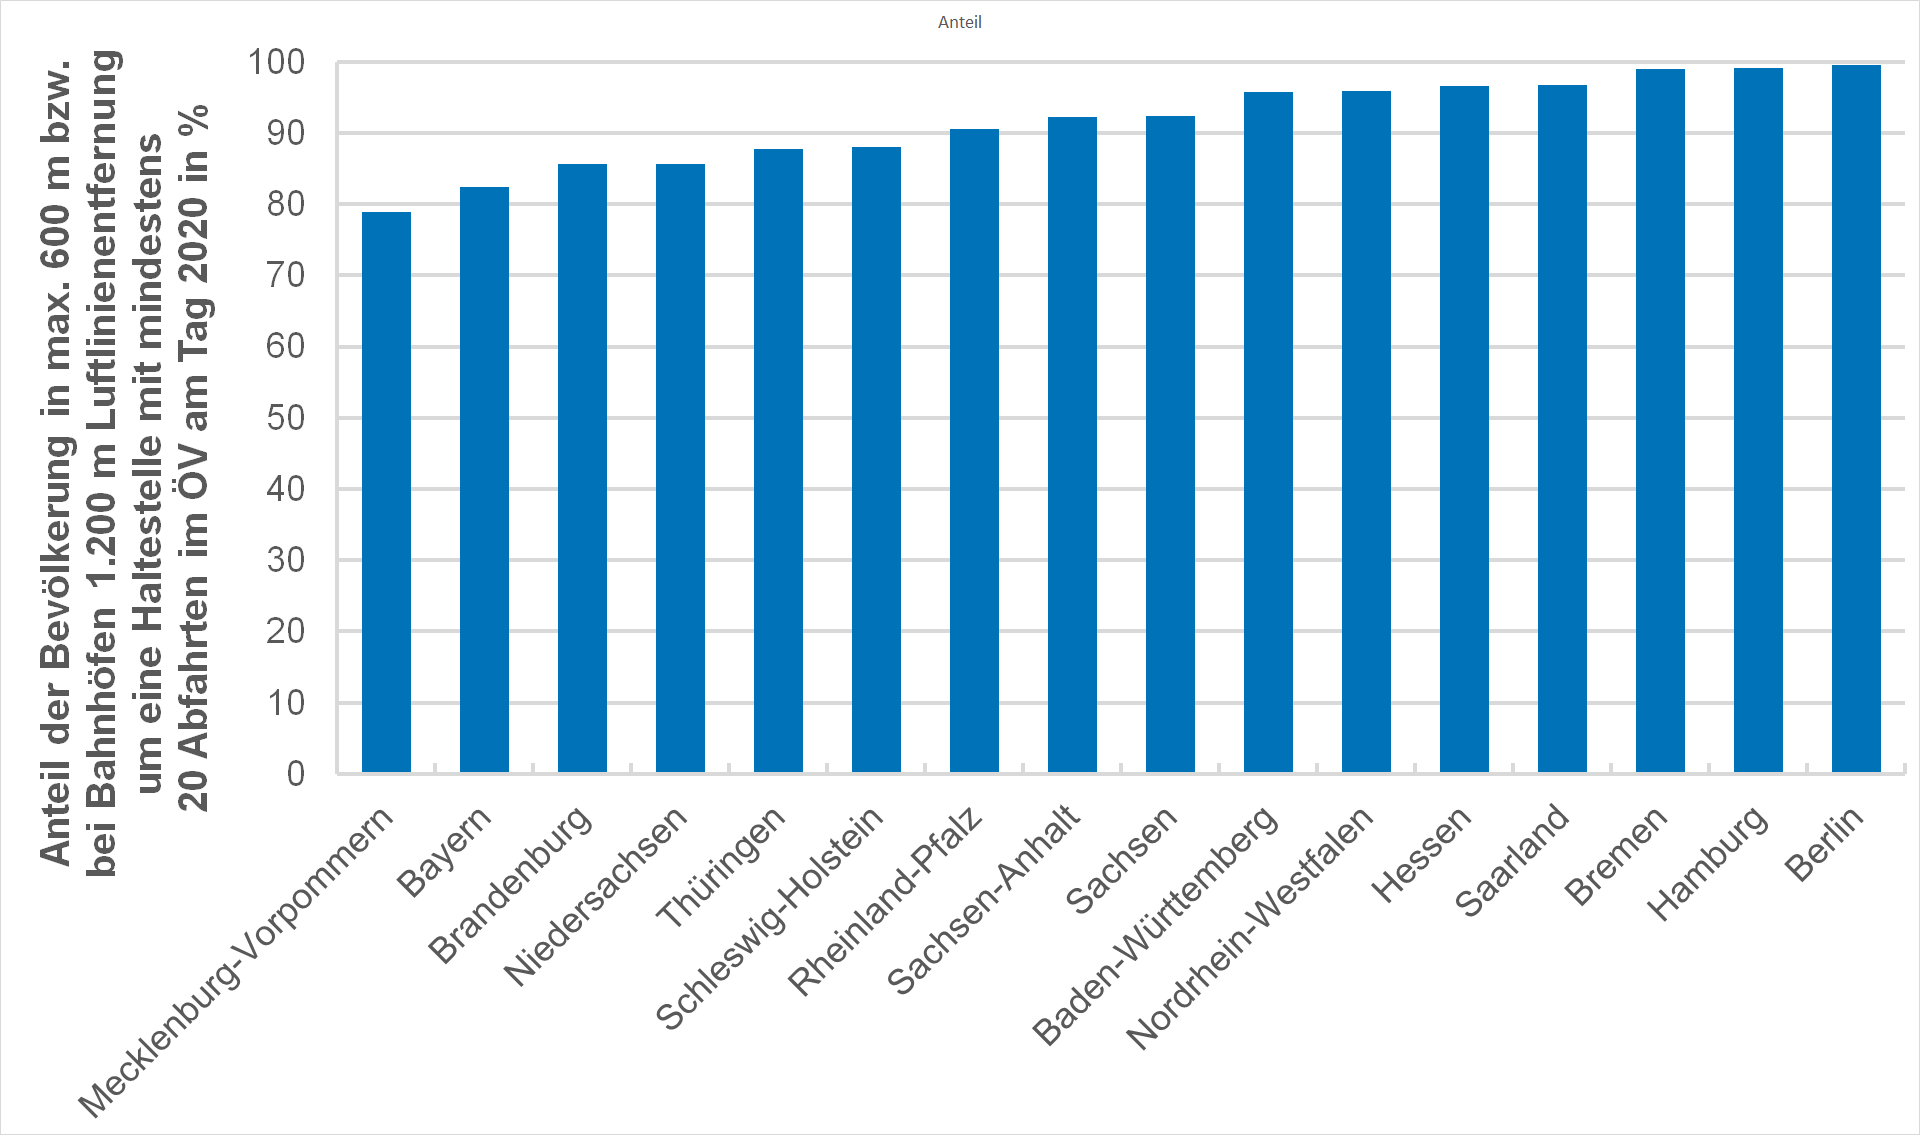 Darstellung der Erreichbarkeit von ÖPNV-Haltestellen mit min. 20 Abfahrten/Tag im Ländervergleich.